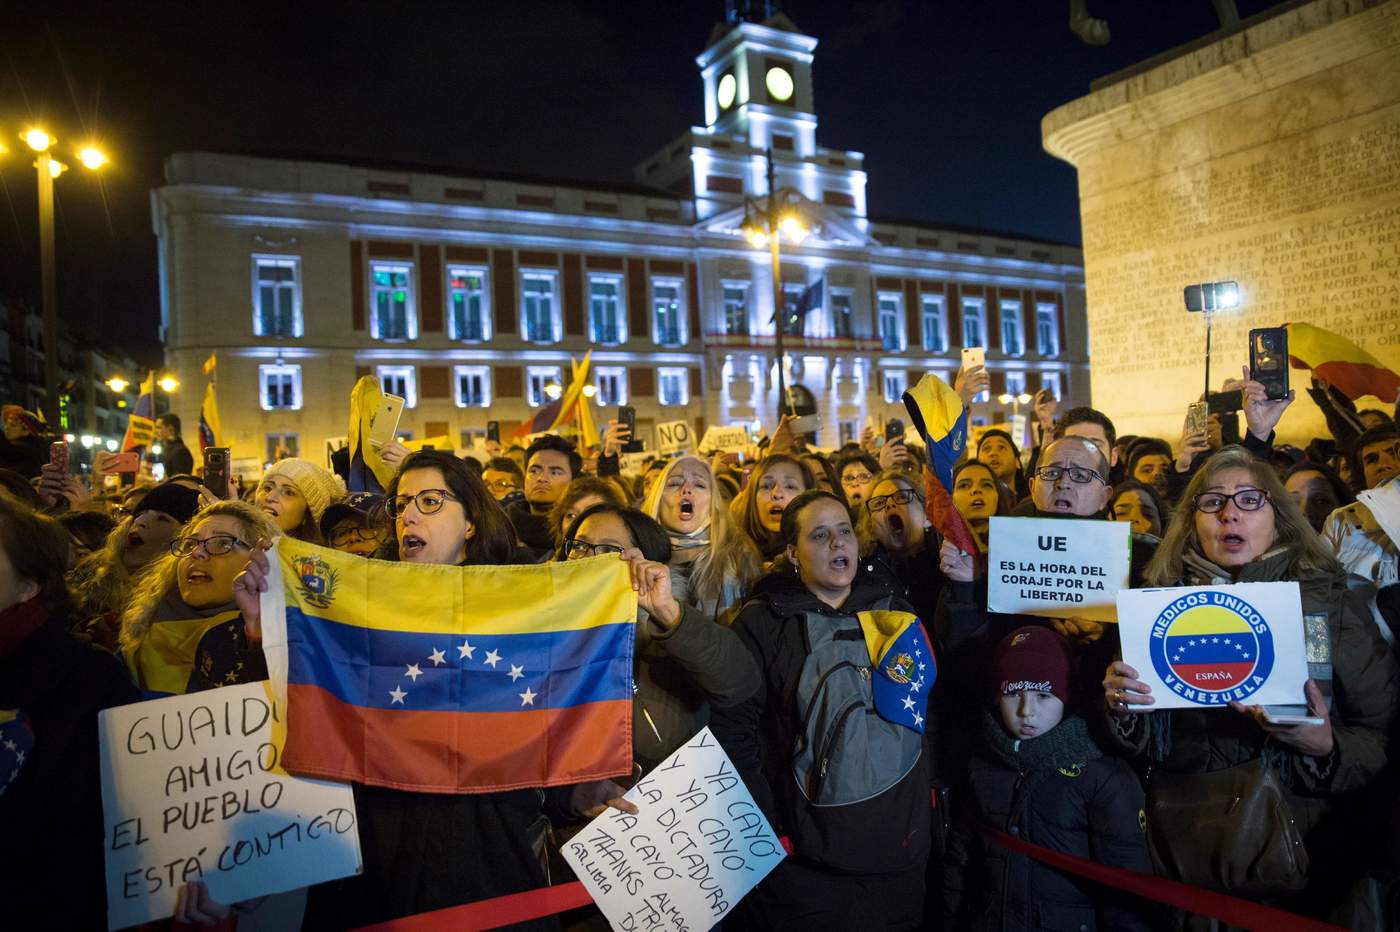 
Cientos de personas acudieron a la Puerta del Sol, en Madrid, para mostrar su apoyo a Guaidó.

